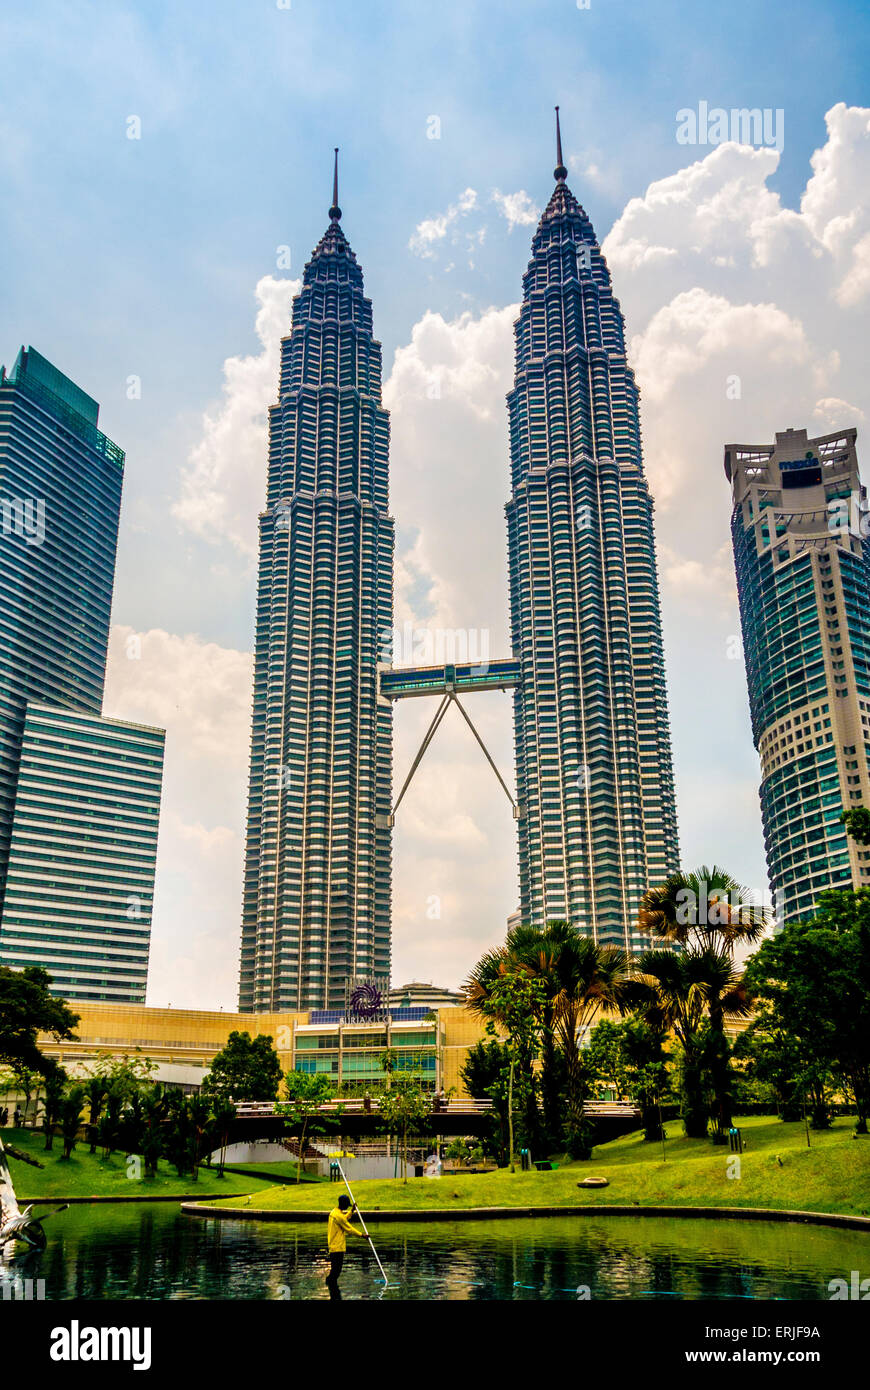 Petronas Twin Towers, Kuala Lumpur, Malesia. taman KLCC (Kuala Lumpur City Centre park) Foto Stock